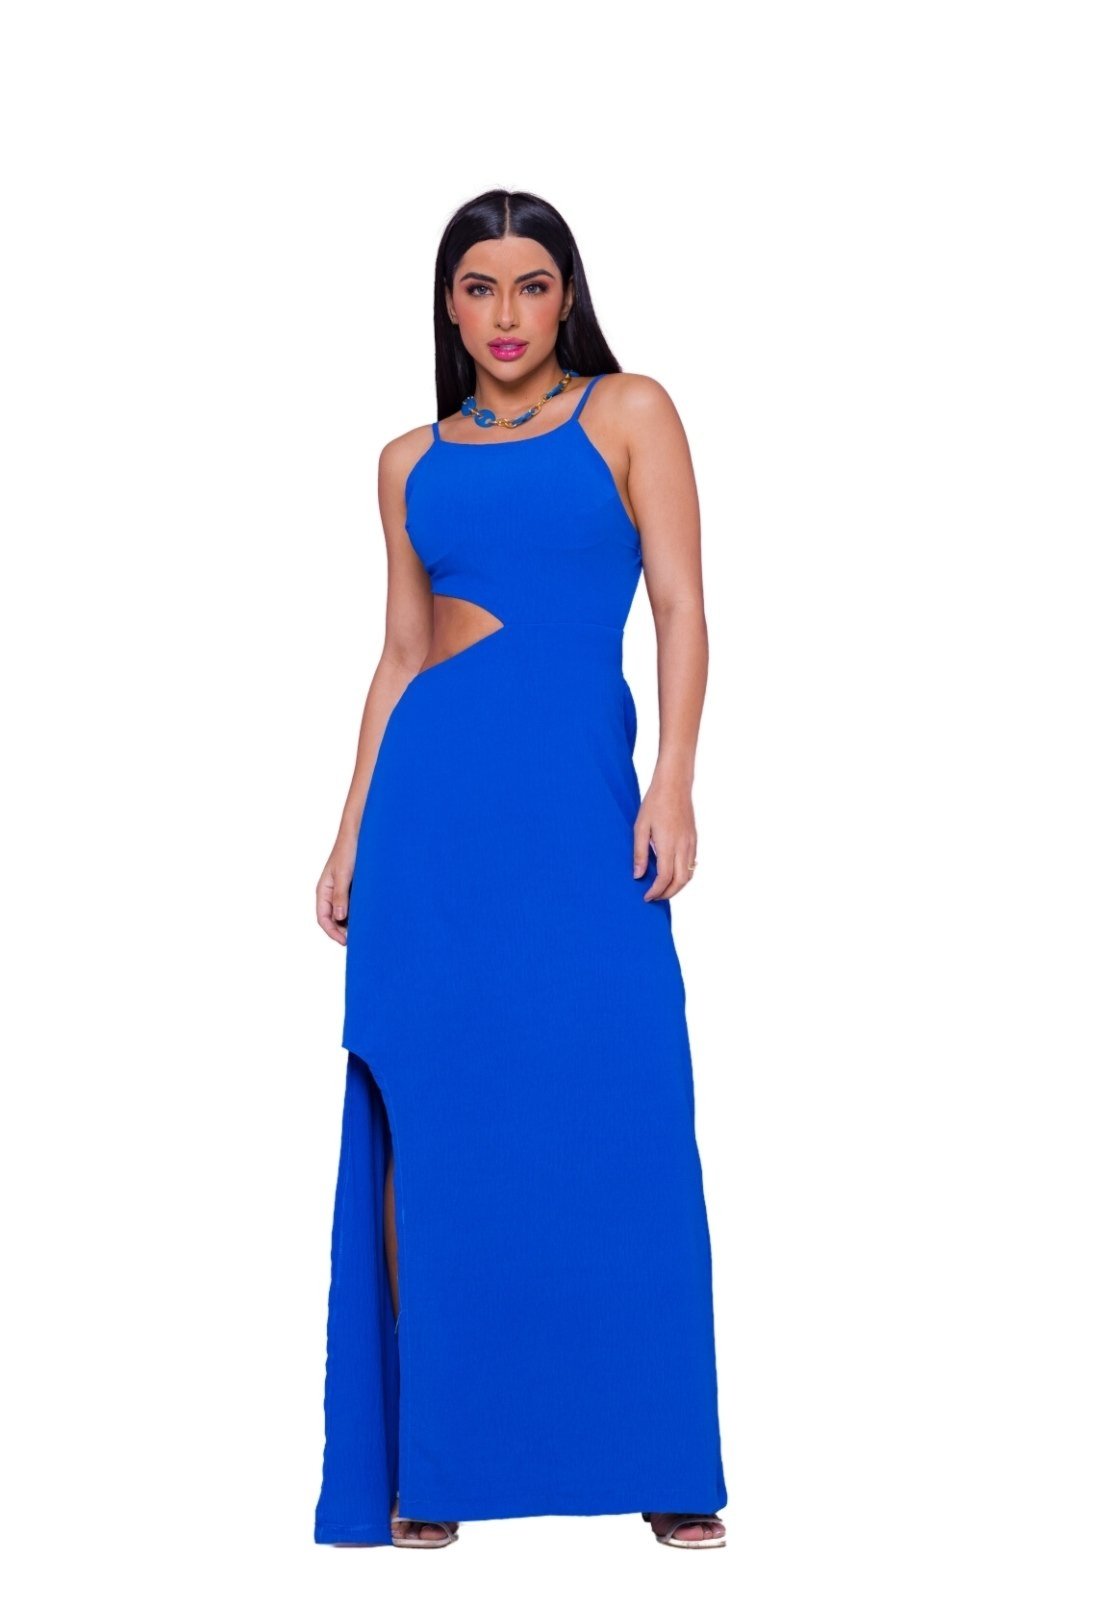 Vestido Abertura Lateral Feminina Azul - Compre agora